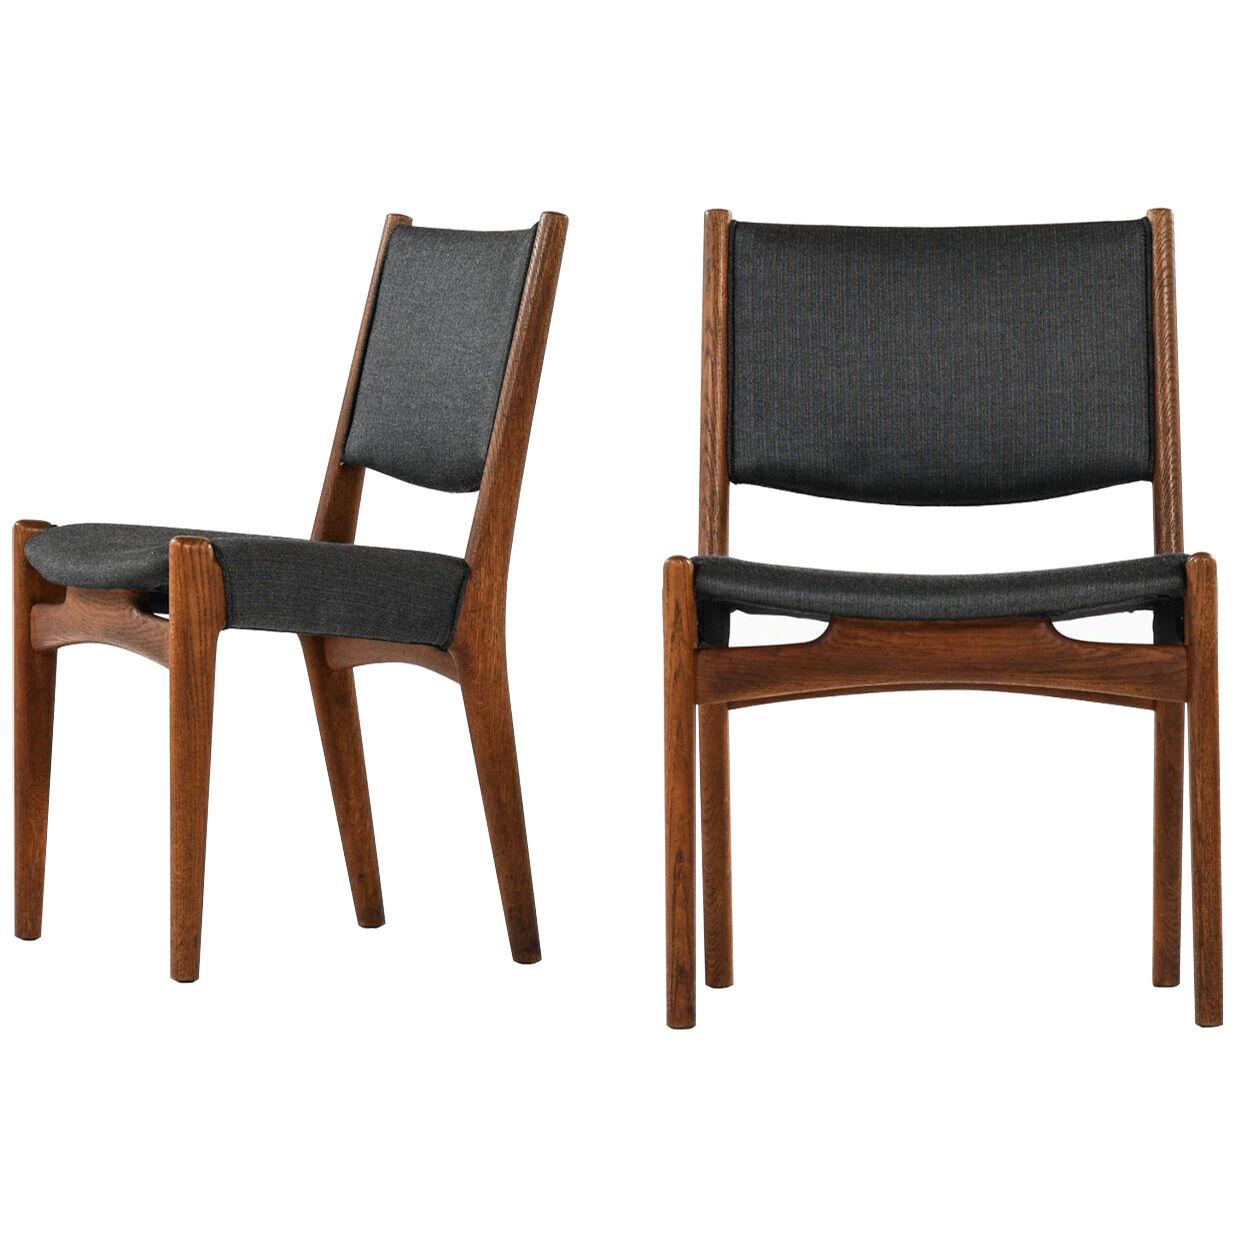 Hans Wegner Dining Chairs Produced by Cabinetmaker Johannes Hansen